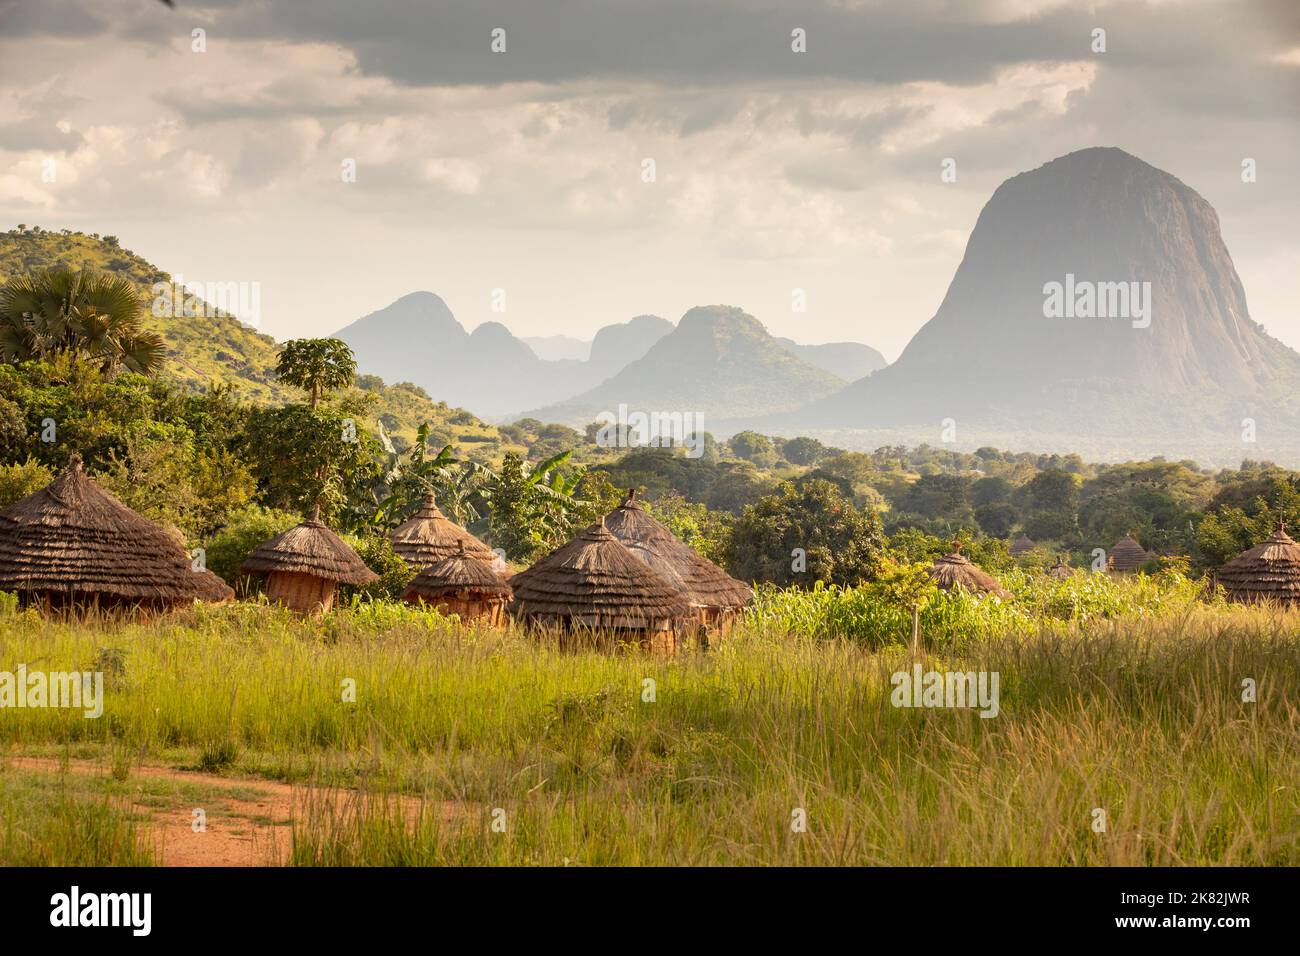 Ugandas Abim-Viertel ist von Schlamm- und Grasstrohdörfern und einer dramatischen Bergkulisse geprägt. Uganda, Ostafrika. Stockfoto